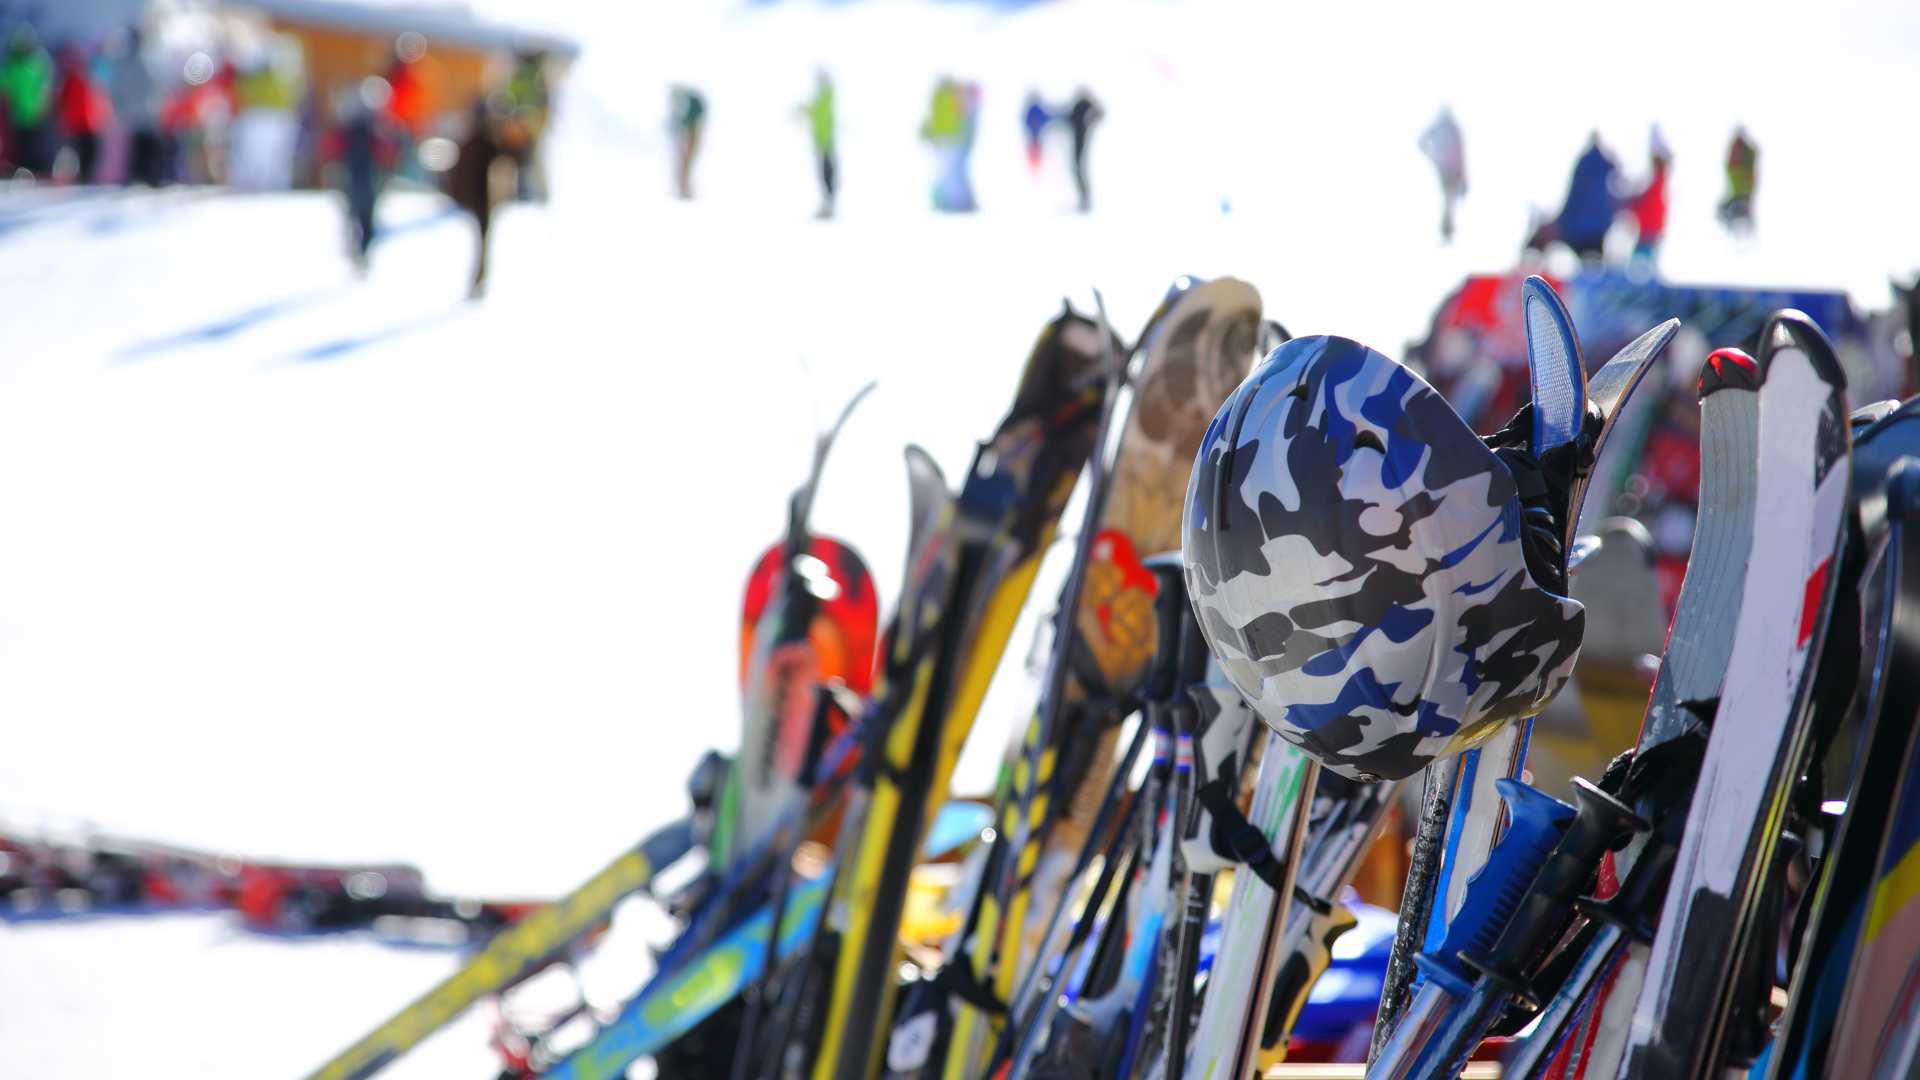 Lot de matériel de ski sur la piste